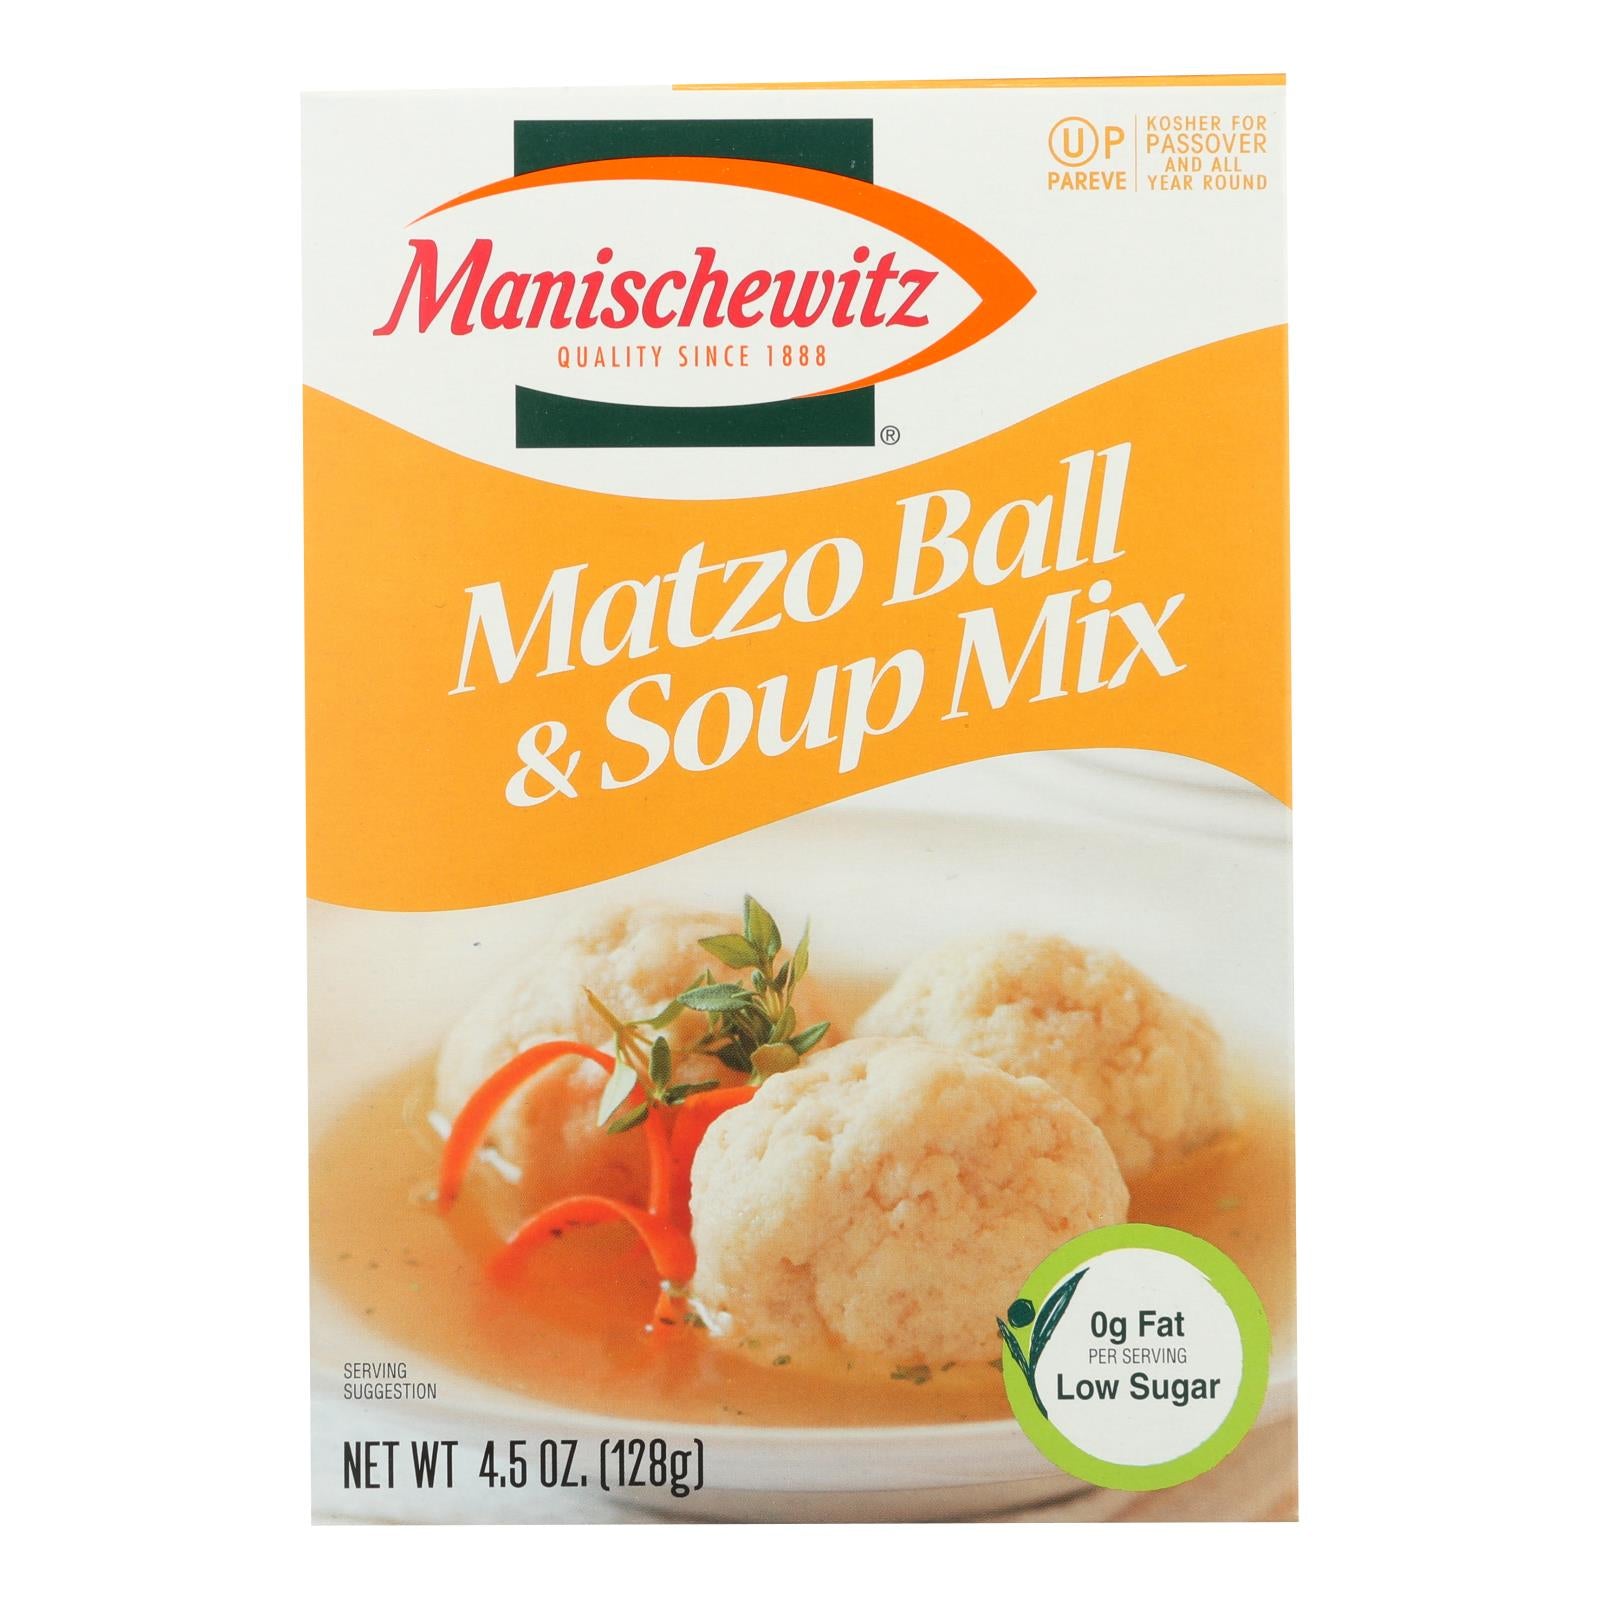 Manischewitz - Matzo Ball And Soup Mix - Case Of 24 - 4.5 Oz.